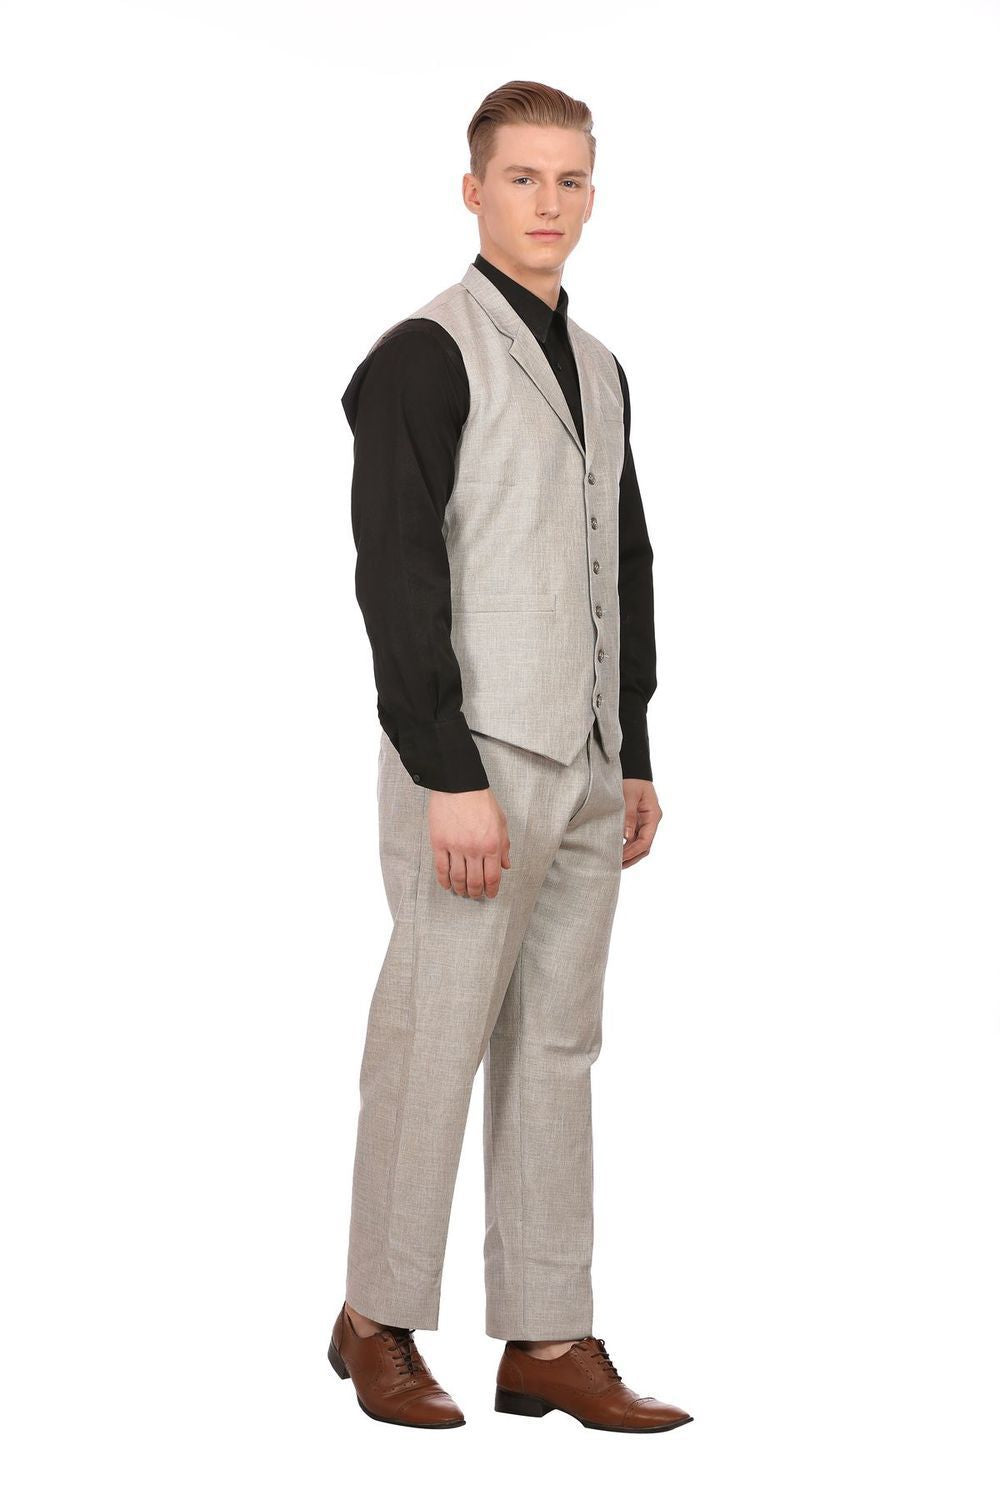 Linen Blend Silver Vest and Pant Set